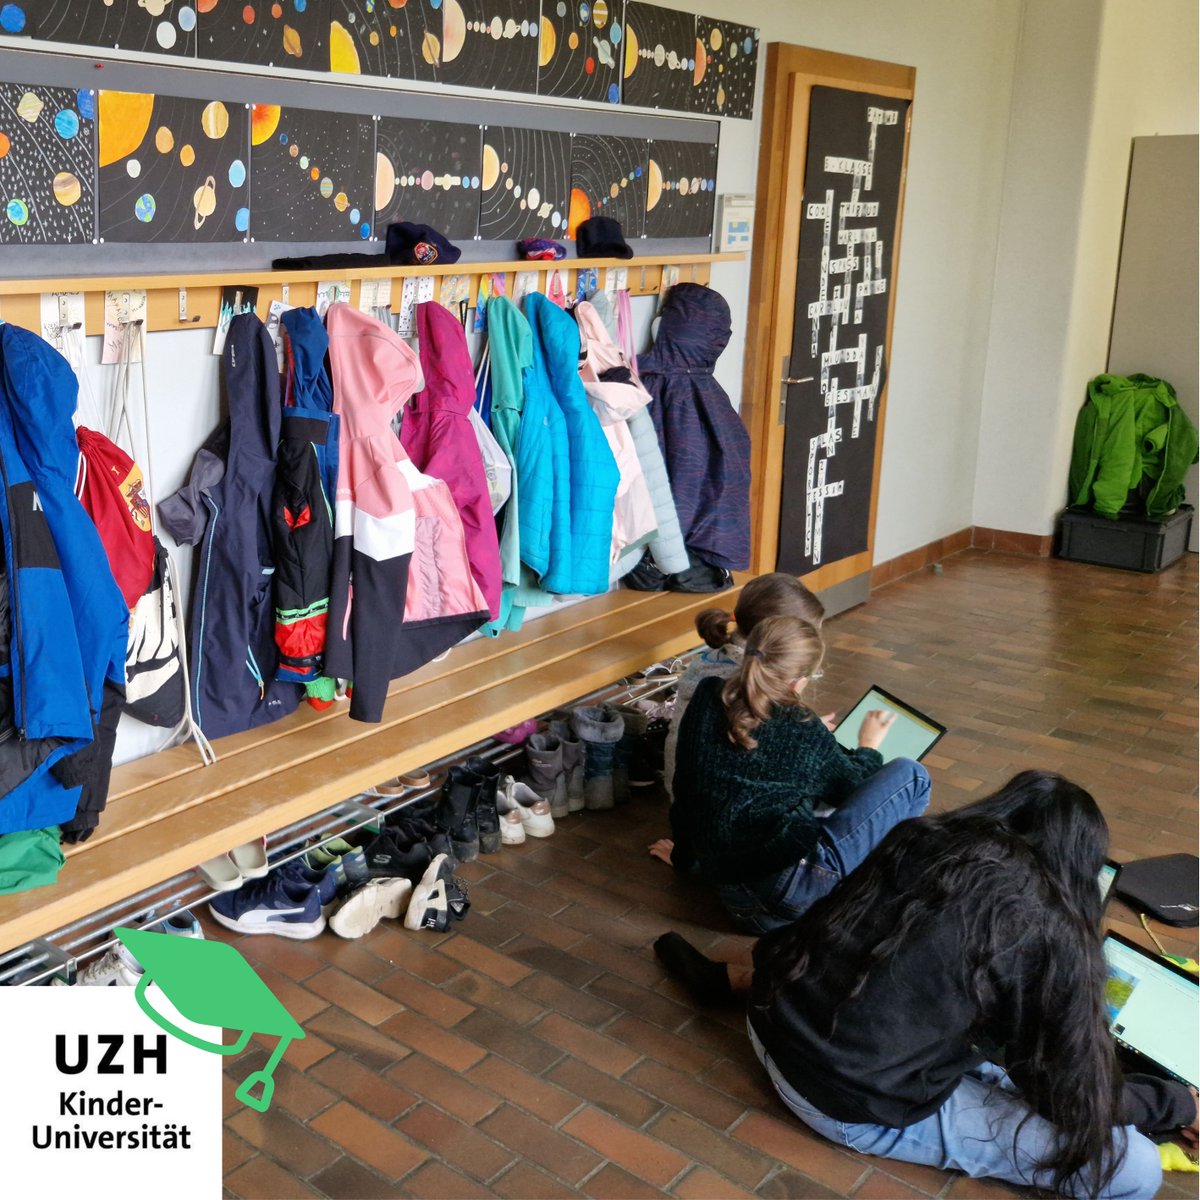 Raumfahrt-Workshop in einer Oerlikoner Primarschule im Rahmen von «Kinder-UZH on Tour».

#kinderuniversität
#kinderuni
#uzh
#ontour
#schule
#wissenschaft
#forschung